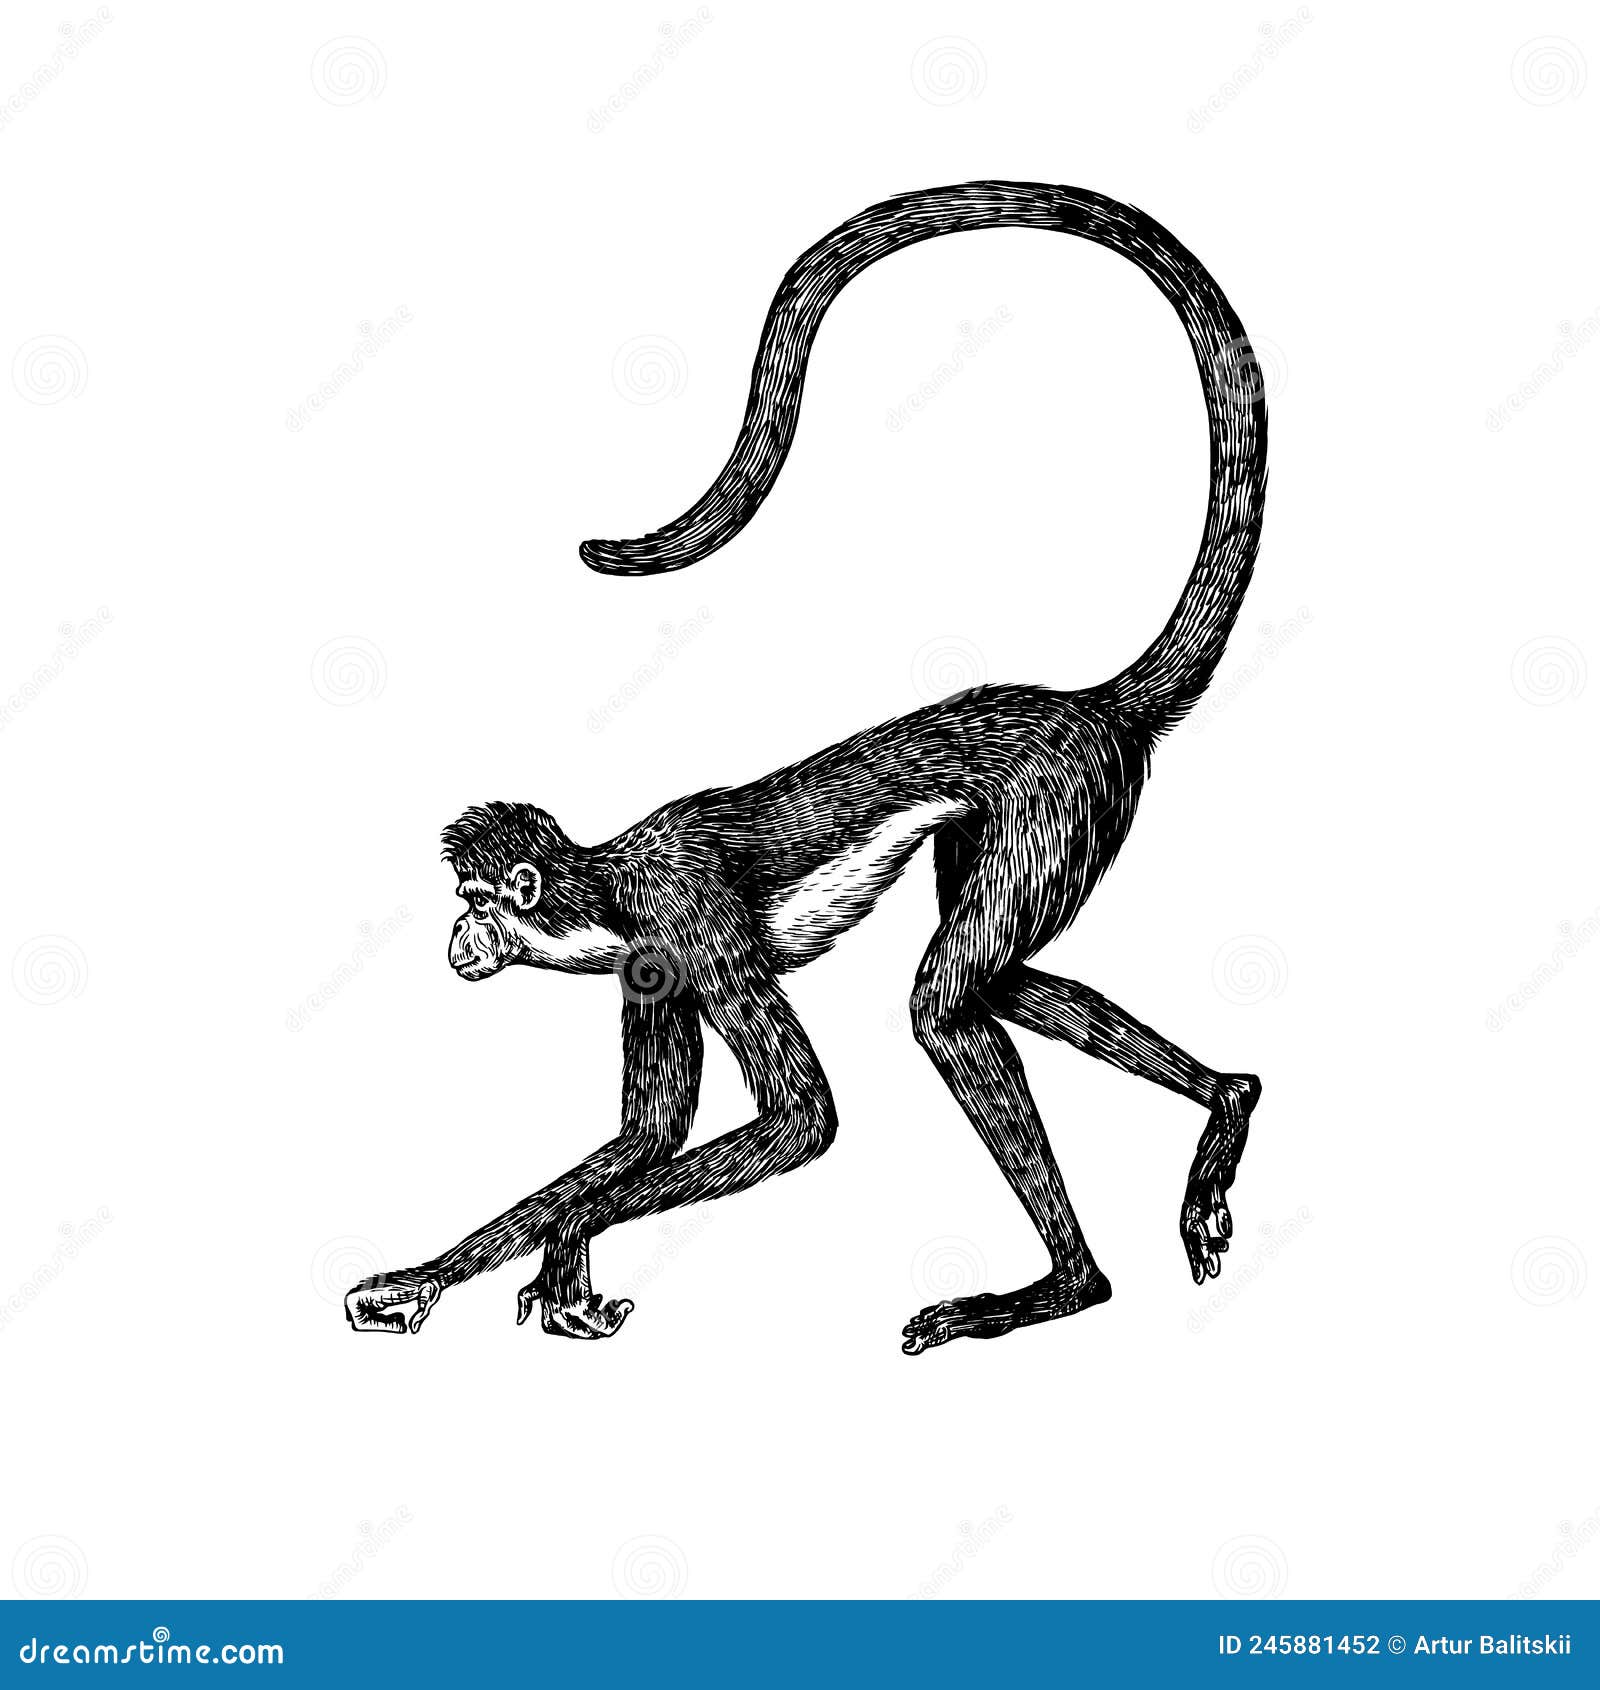 110+ Macaco Aranha Ilustração de stock, gráficos vetoriais e